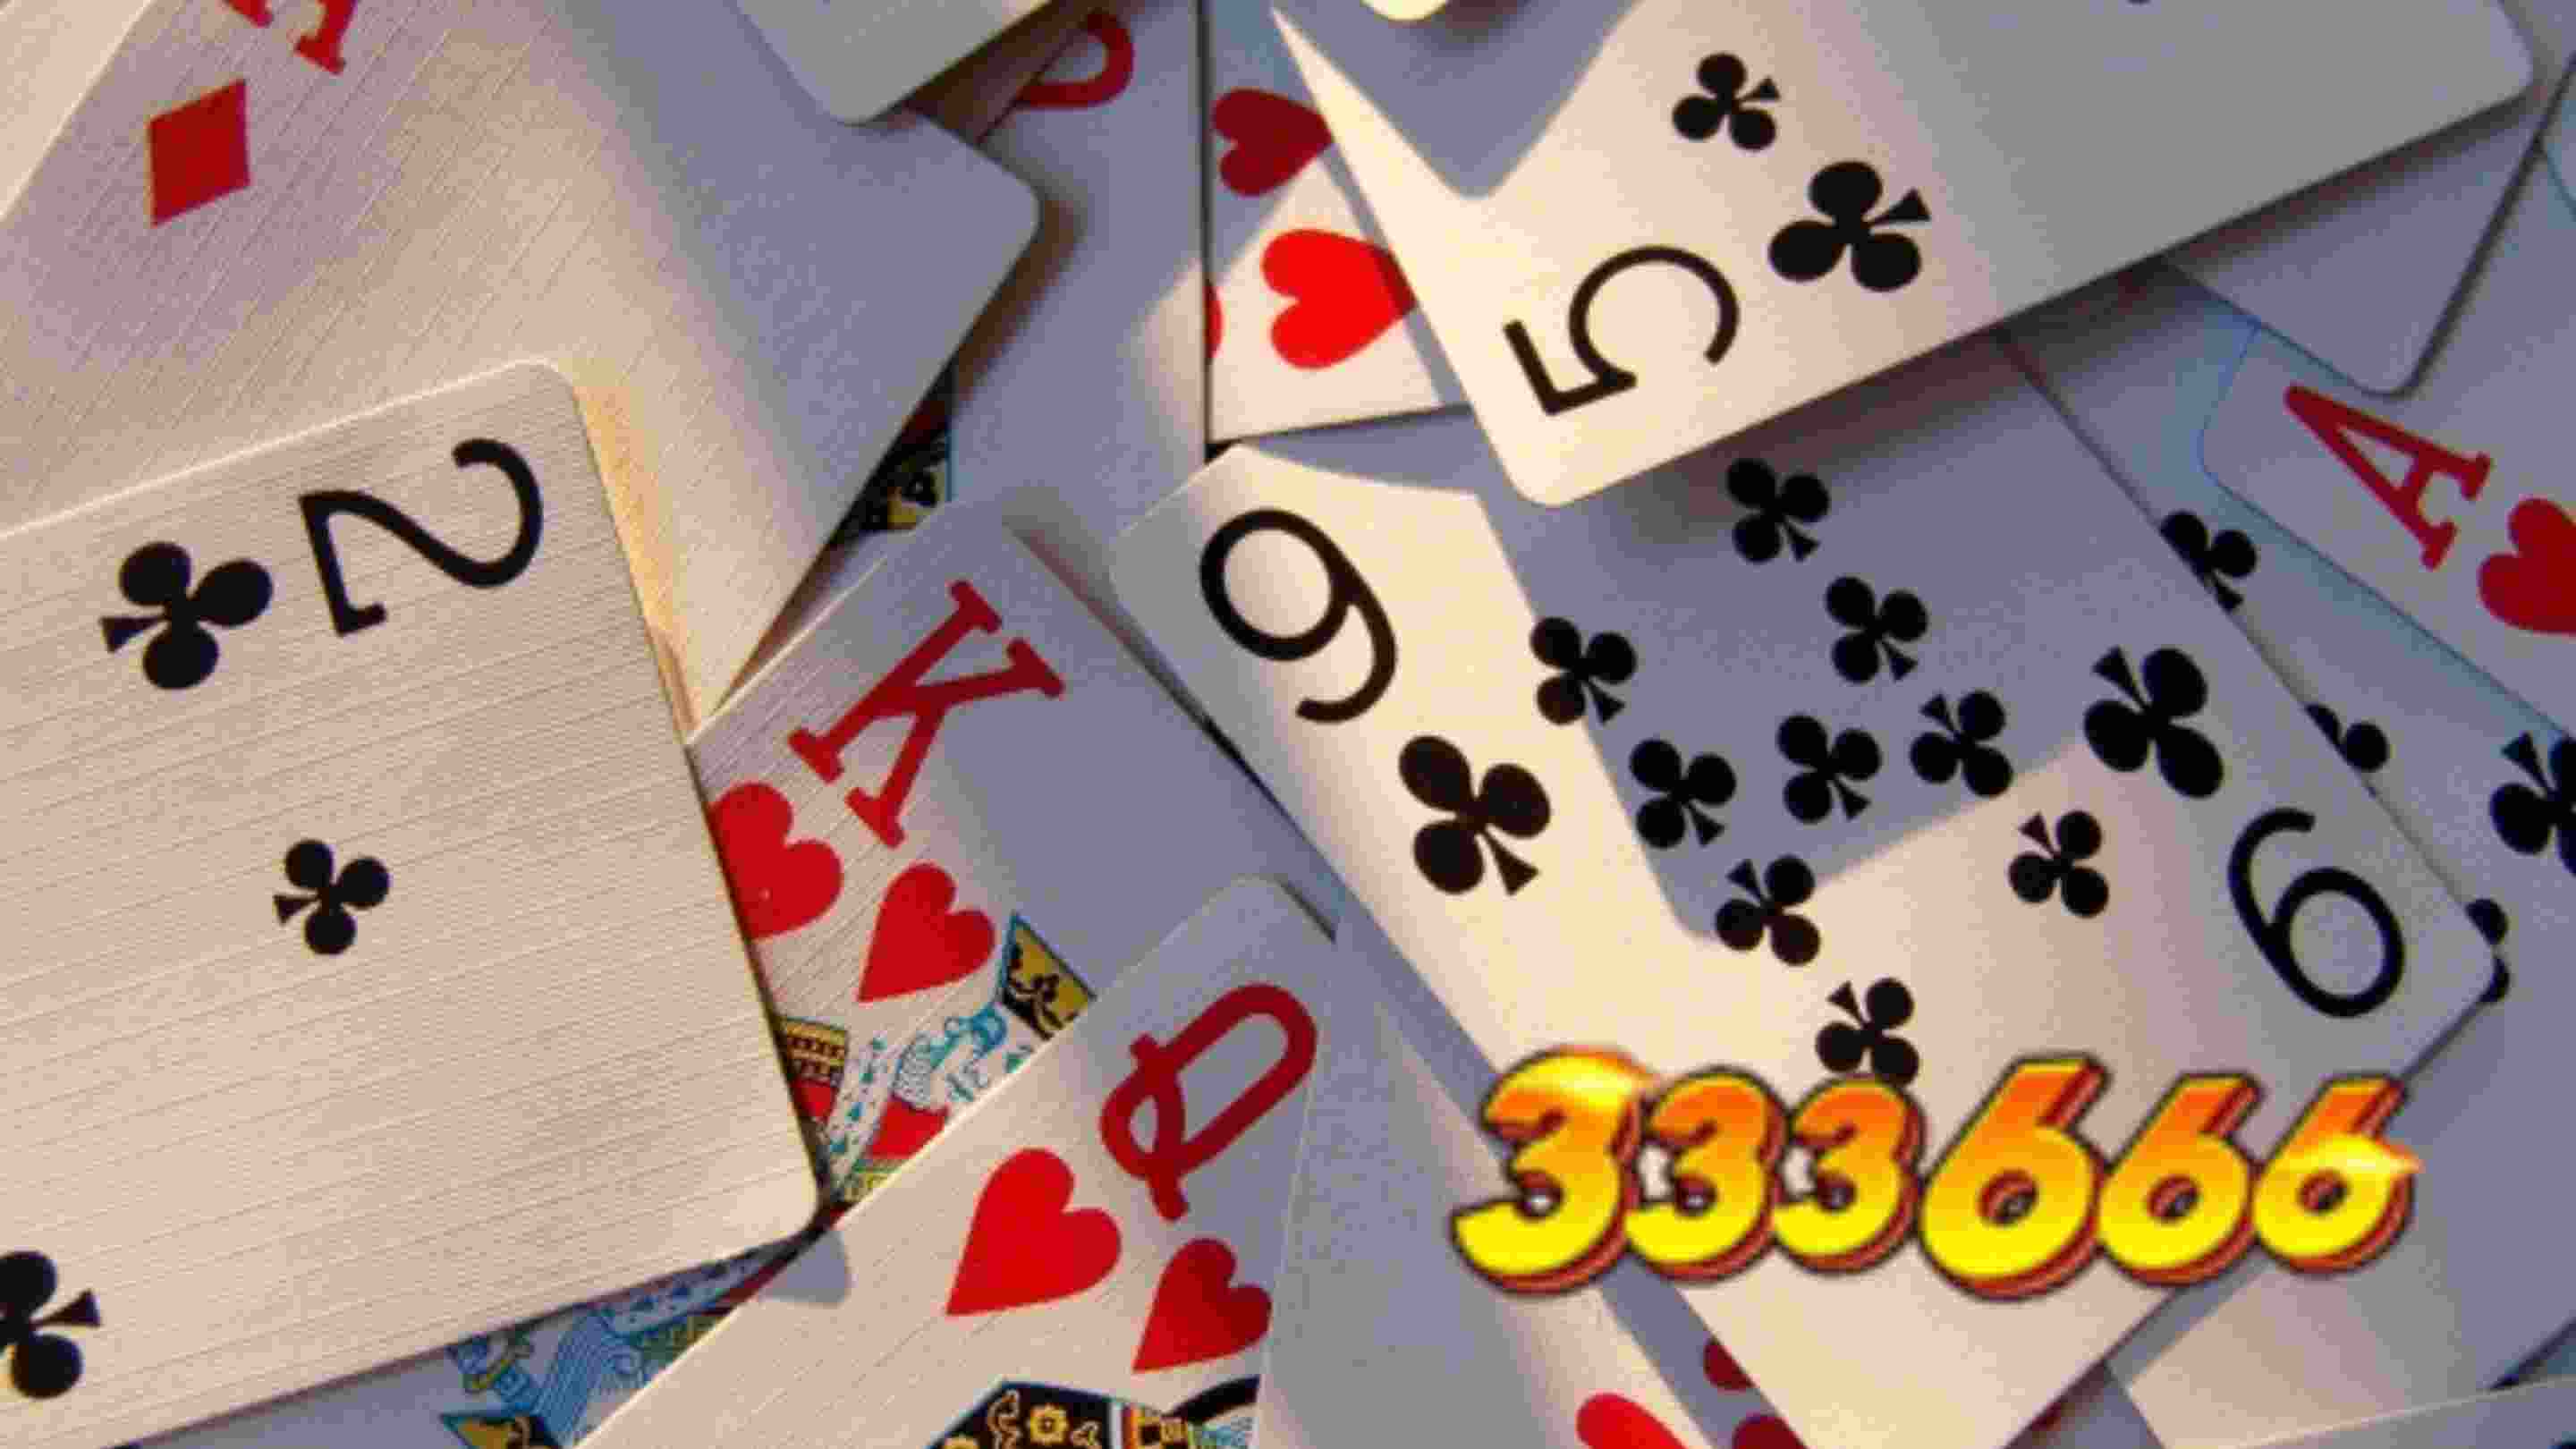 333666 giải thích tại sao tâm lý chơi game đánh bài luôn thua vì sao?